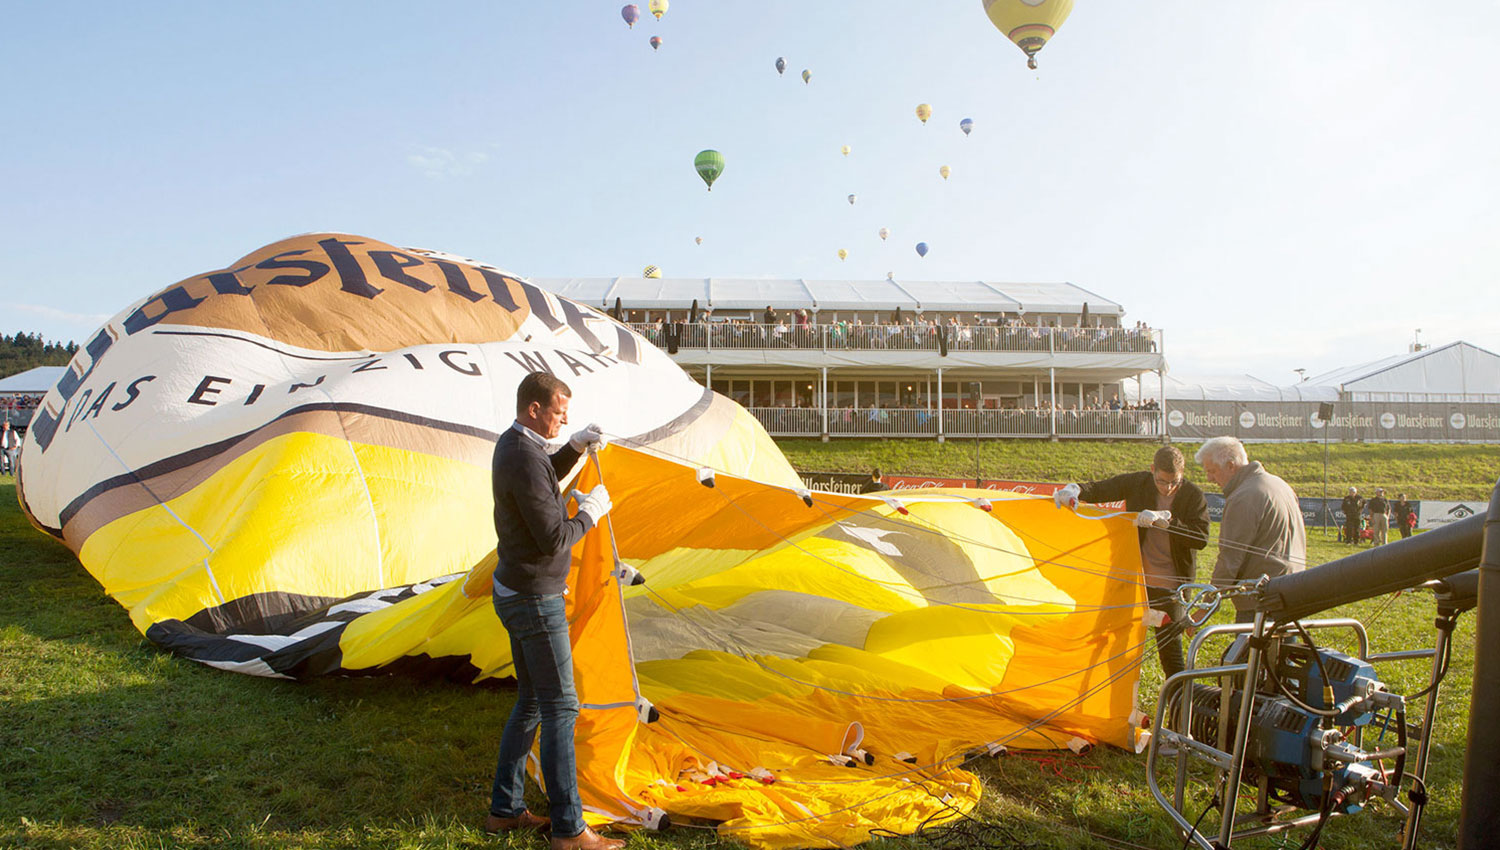 Hot-Air Balloon Festival